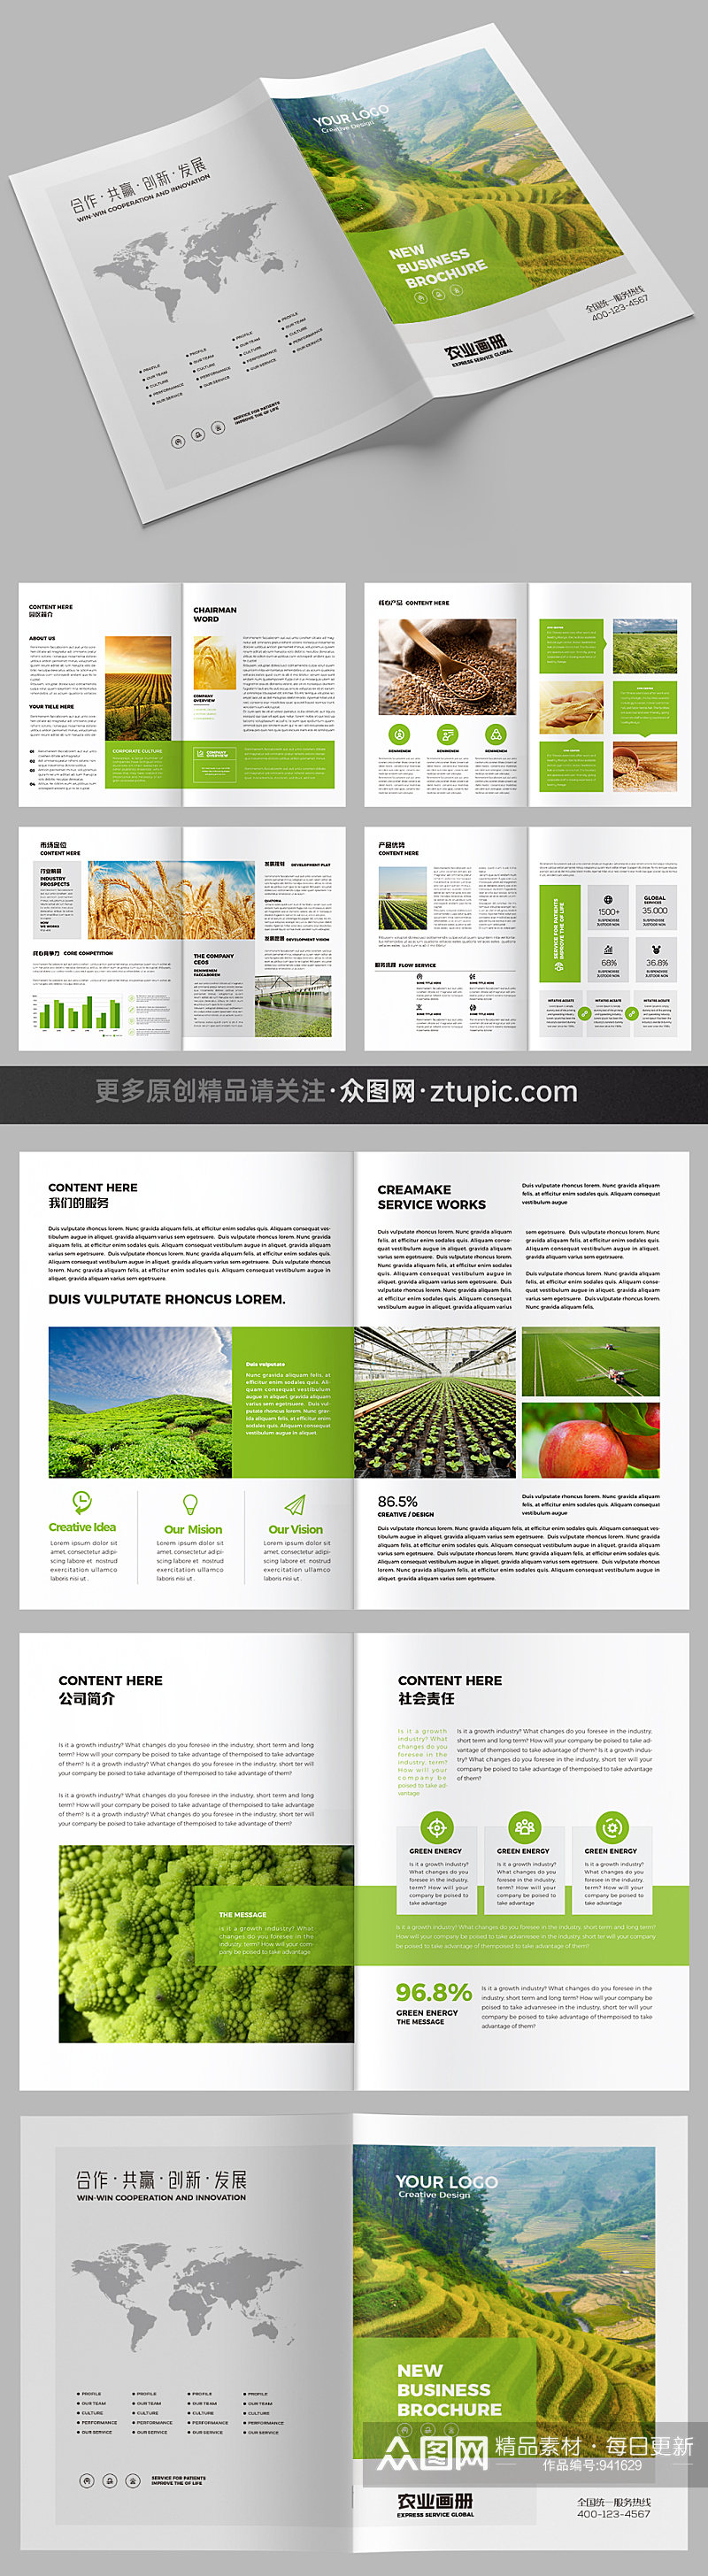 绿色农业宣传册设计模板素材